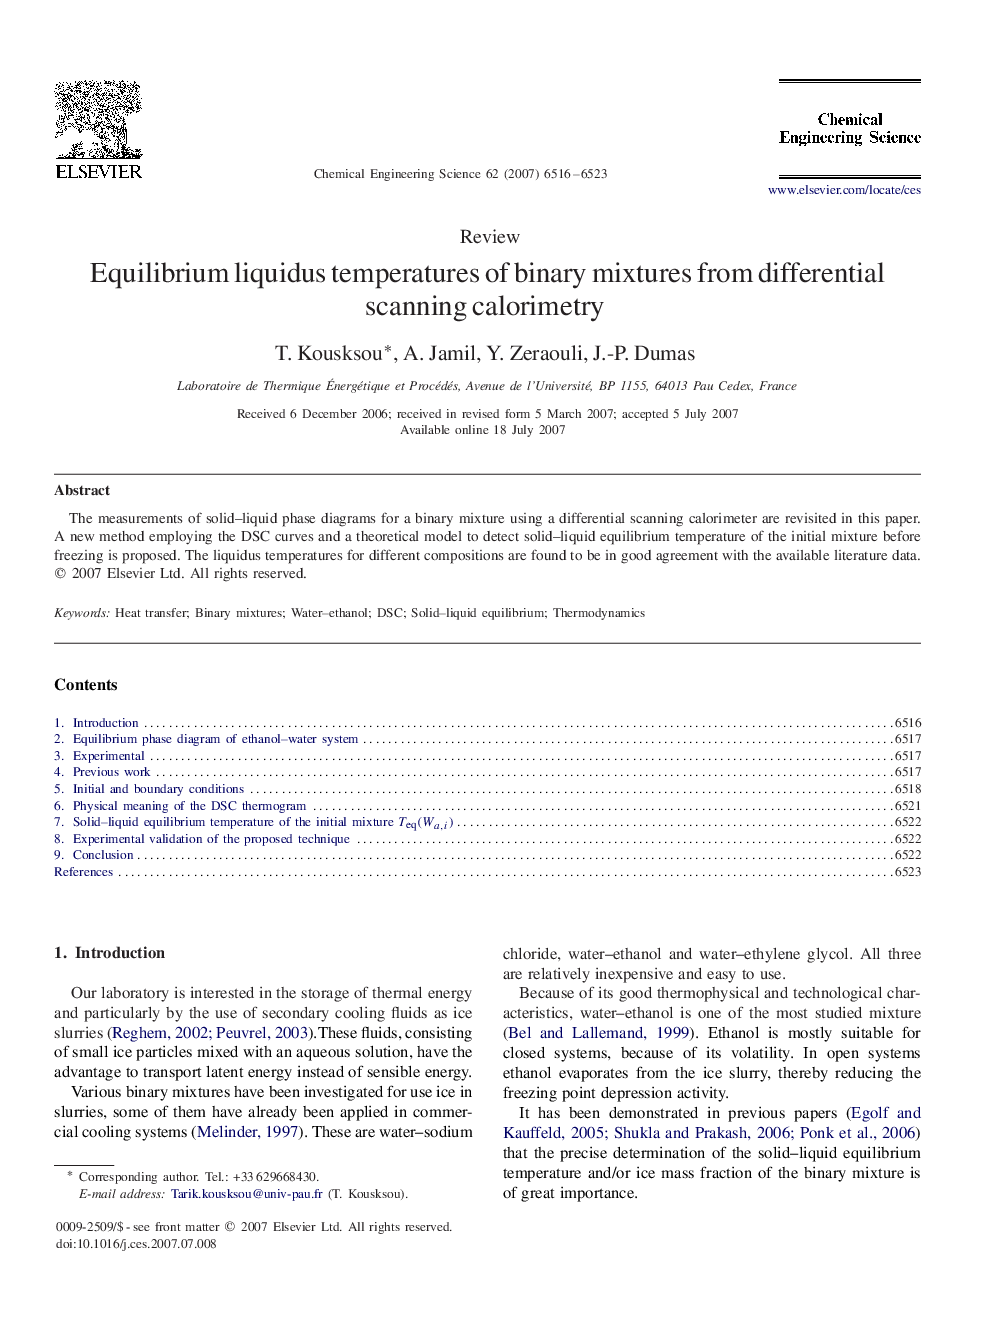 Equilibrium liquidus temperatures of binary mixtures from differential scanning calorimetry